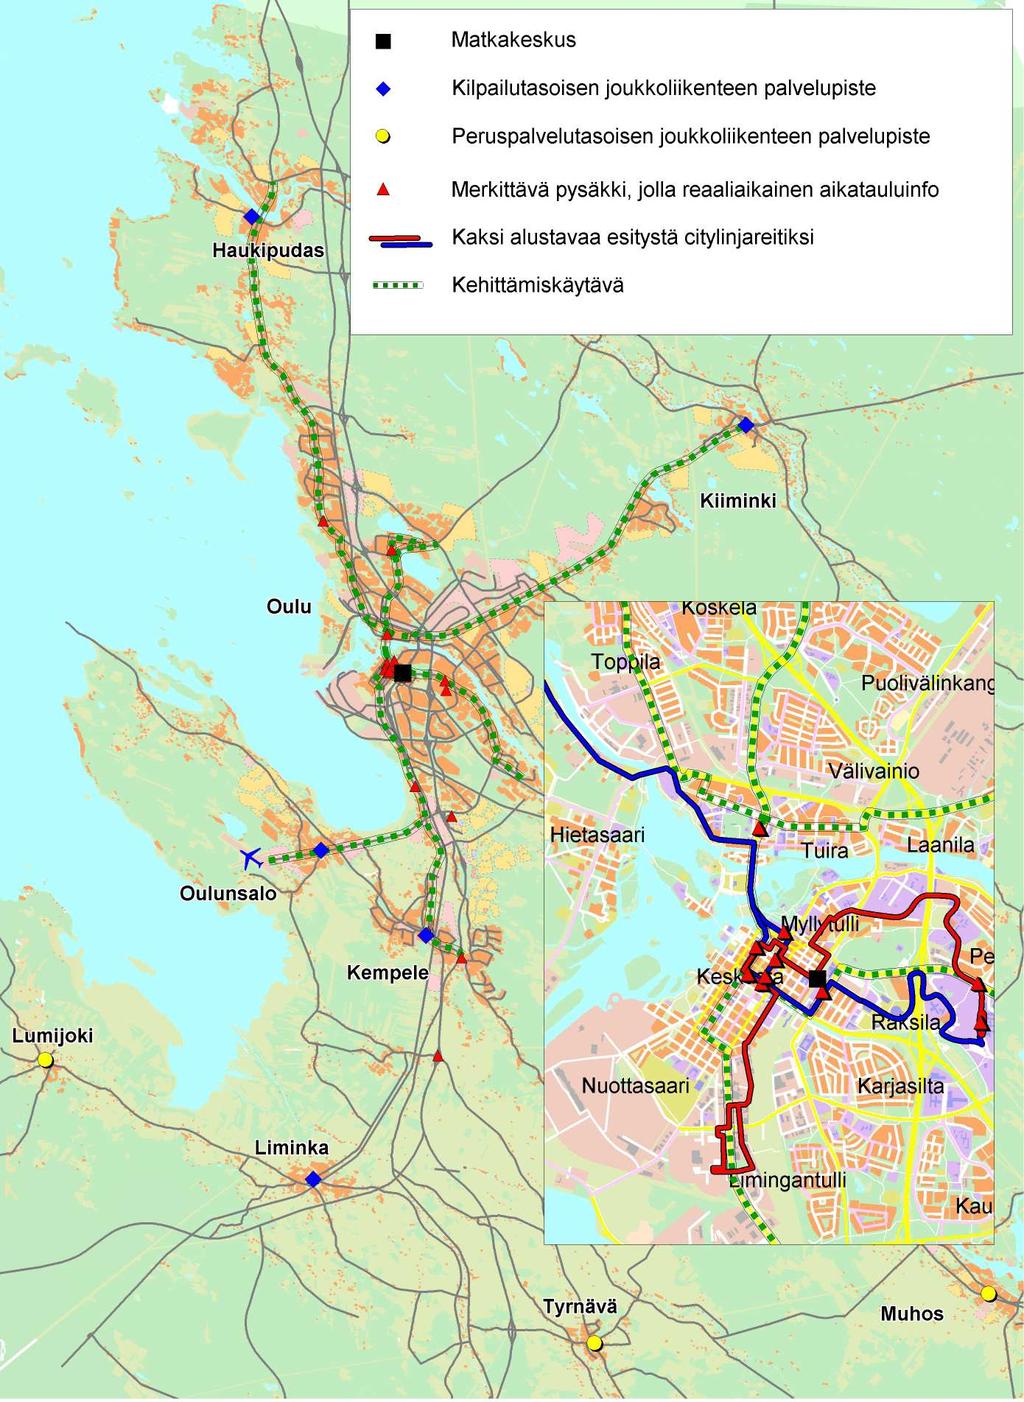 31 Ritaportin ja Zatellitiin alueiden liikennejärjestelyjä on tarkasteltu valtatien 4 yleissuunnitelmassa.